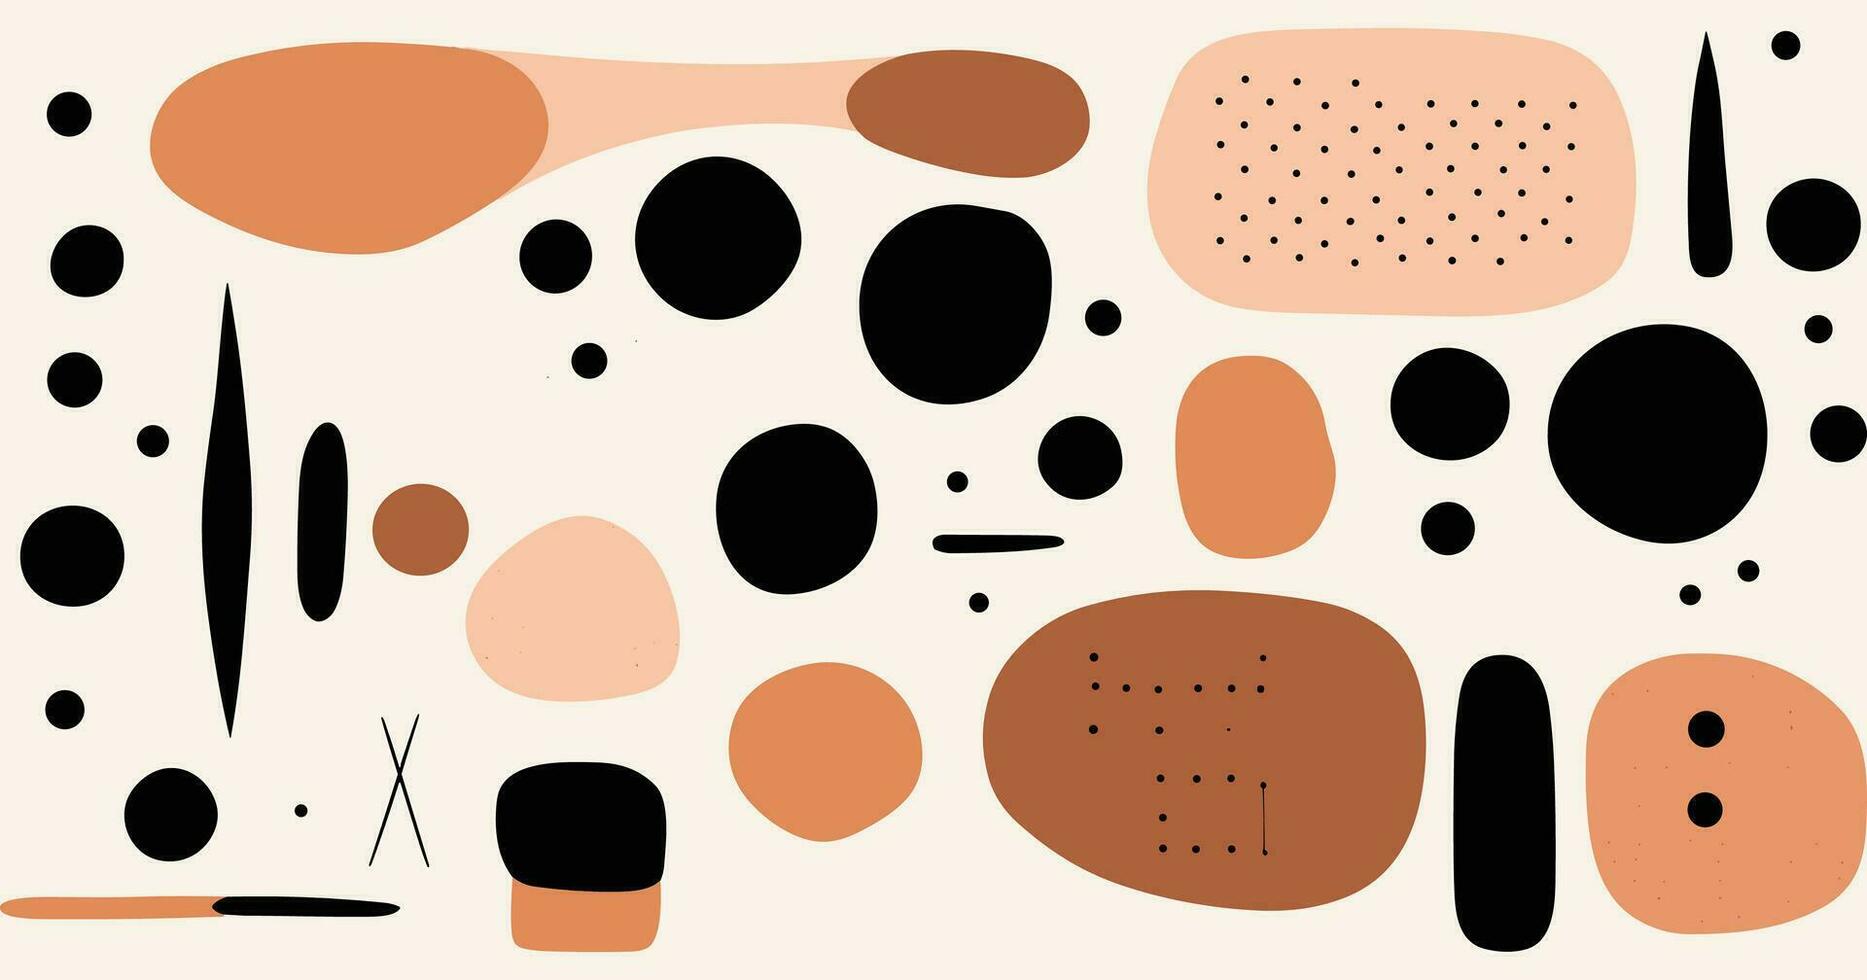 abstrakt design med svart, vit och persika former, i de stil av isolerat siffror, jordnära organisk former, nyckfull minimalism, prickad, abstrakt minimalism uppskattare vektor